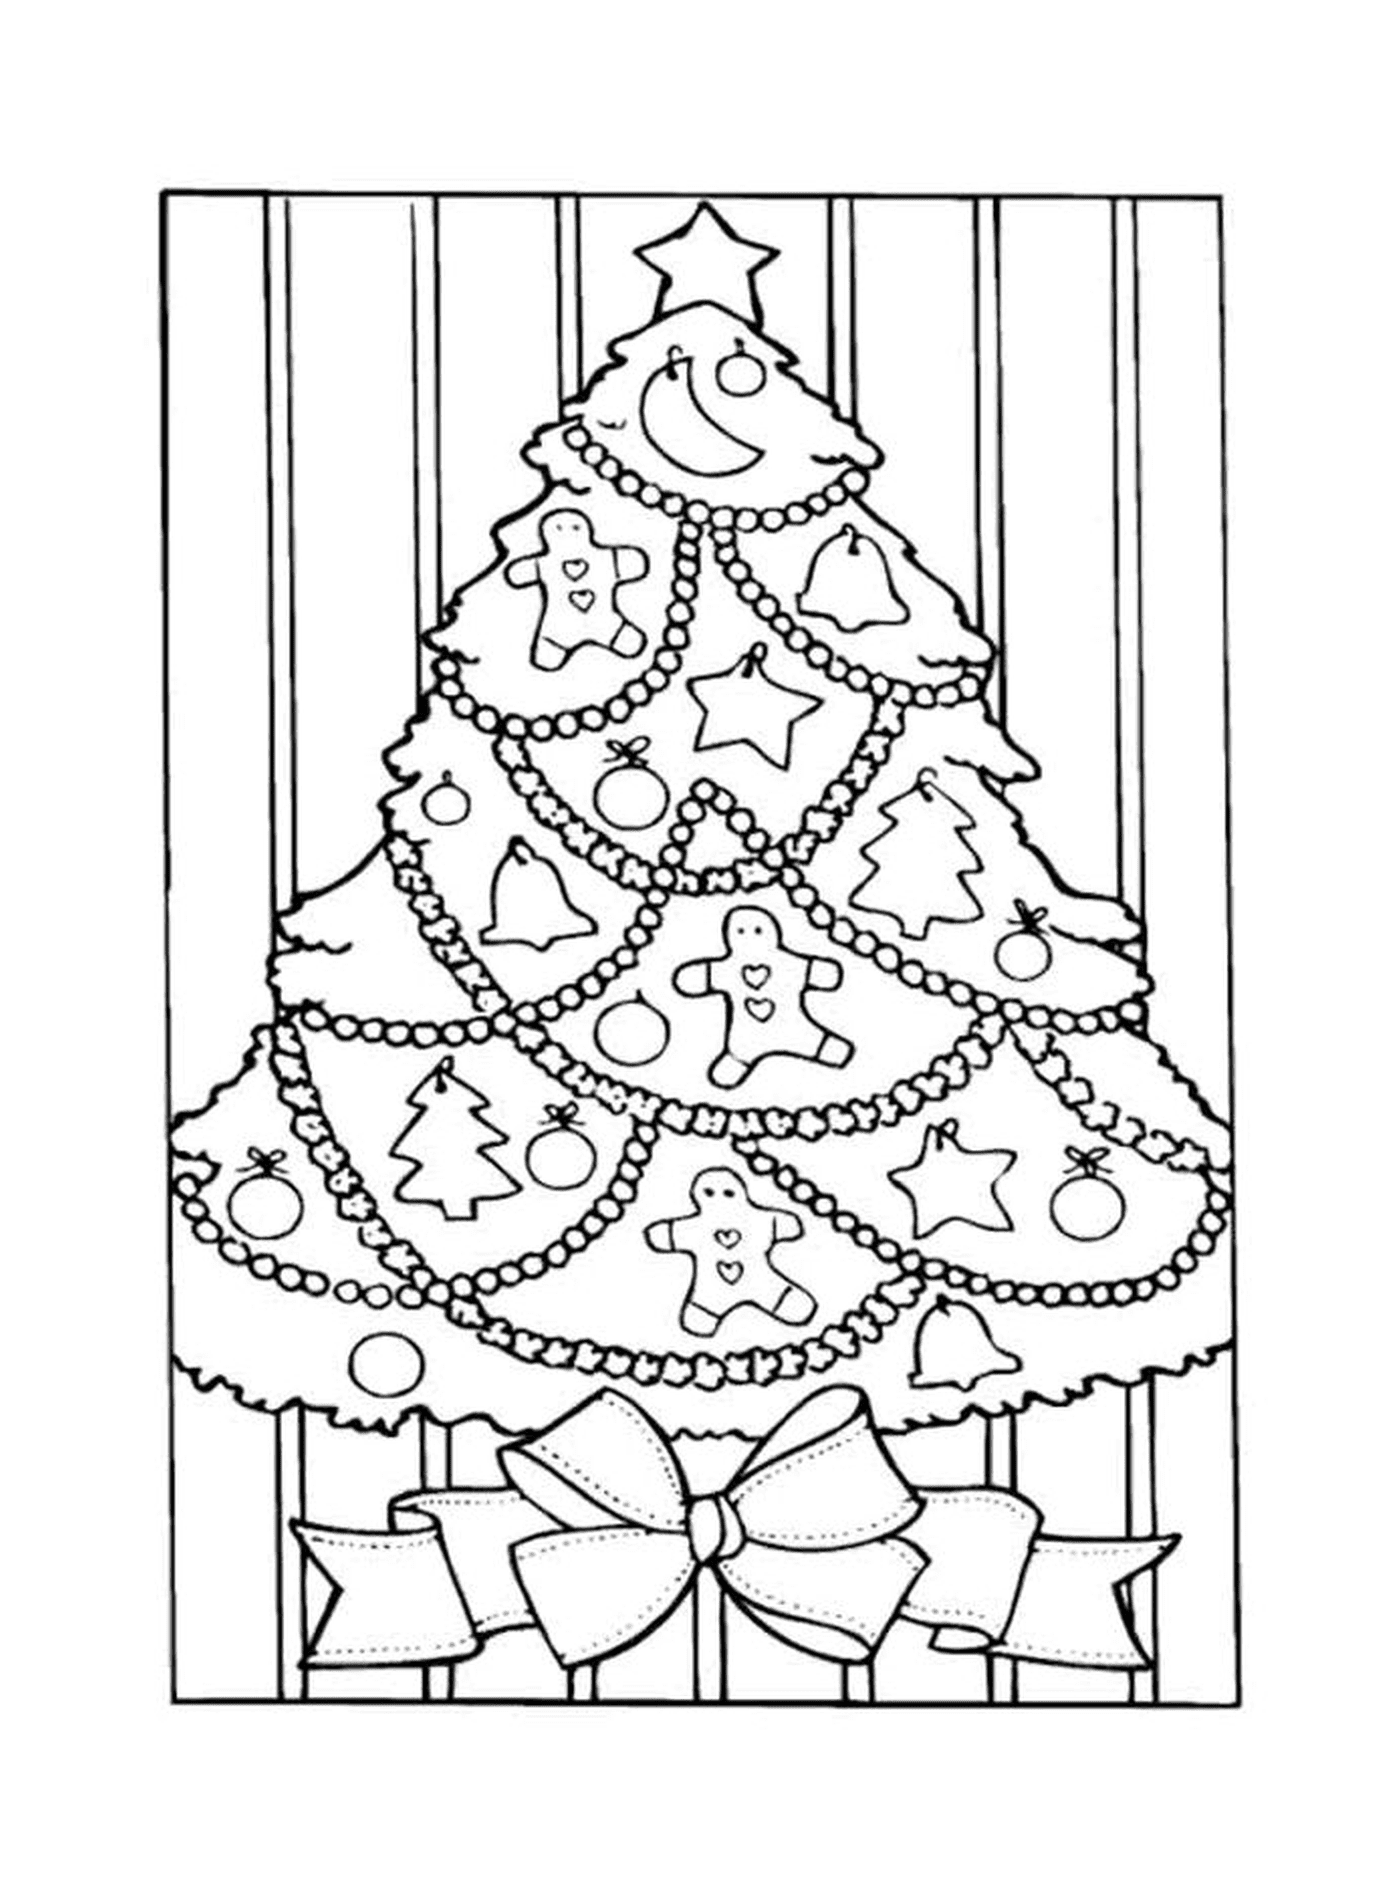  Ein Weihnachtsbaum, dekoriert mit Lebkuchenkeksen 